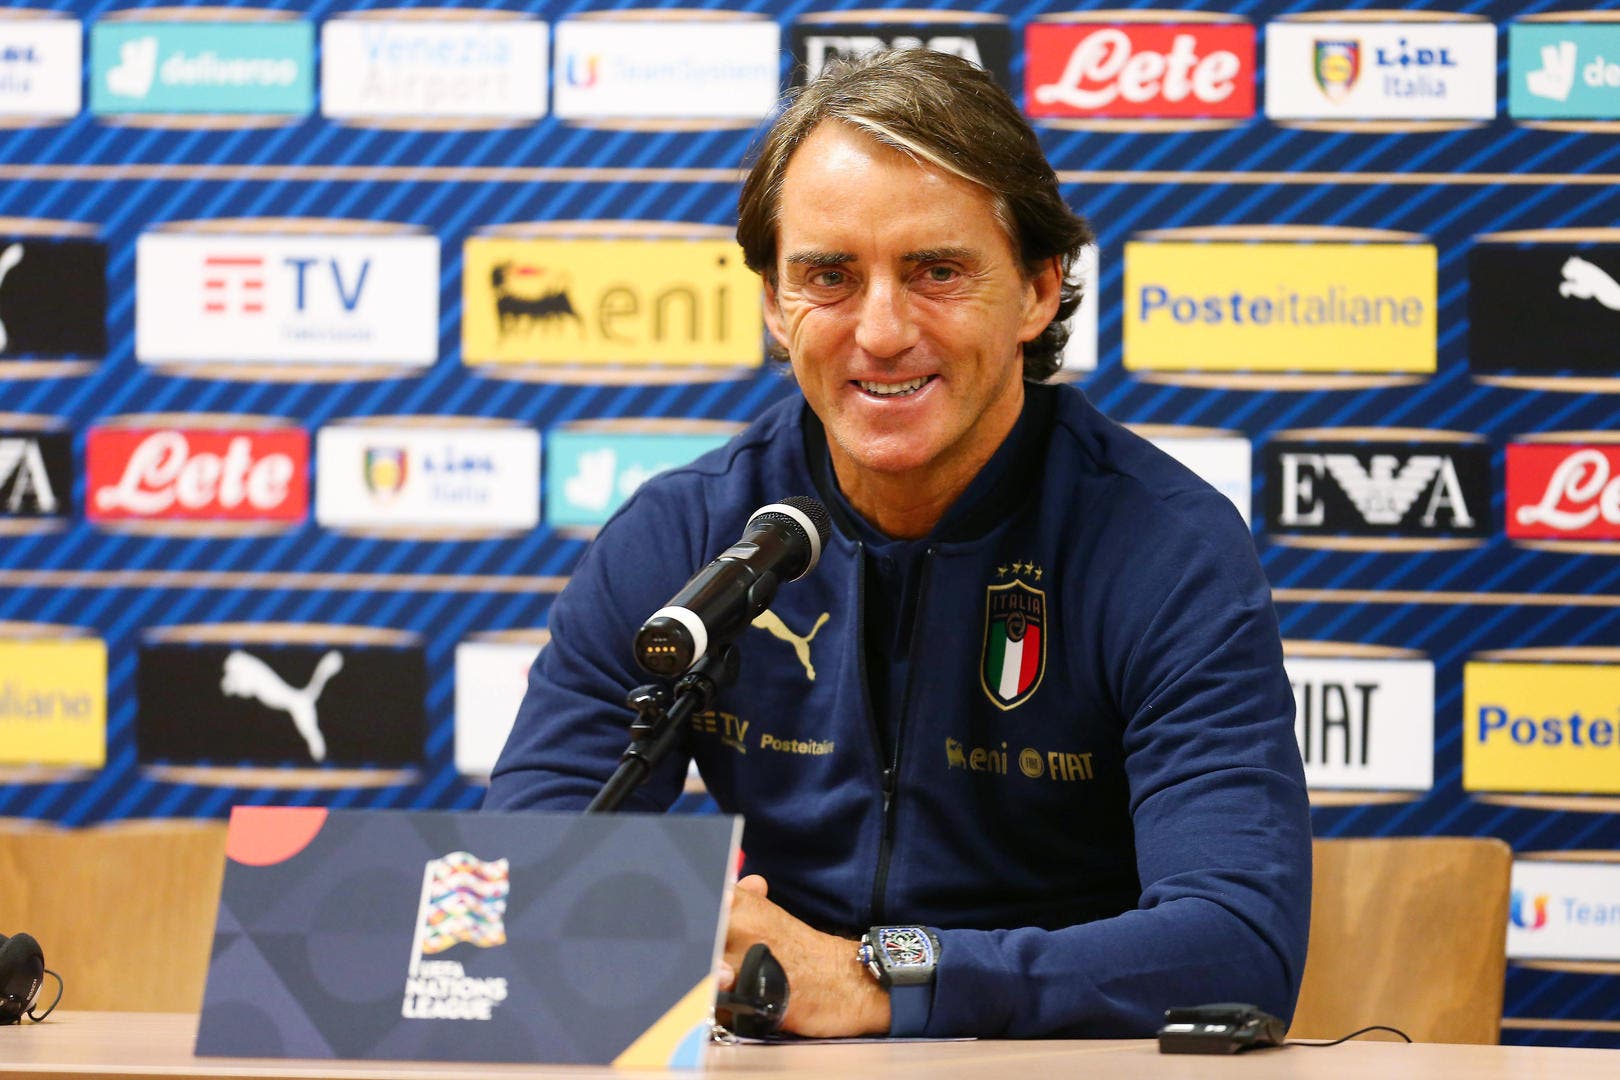 « Si j’avais le choix », Mancini (Italie) révèle l’équipe qu’il veut éviter en barrages